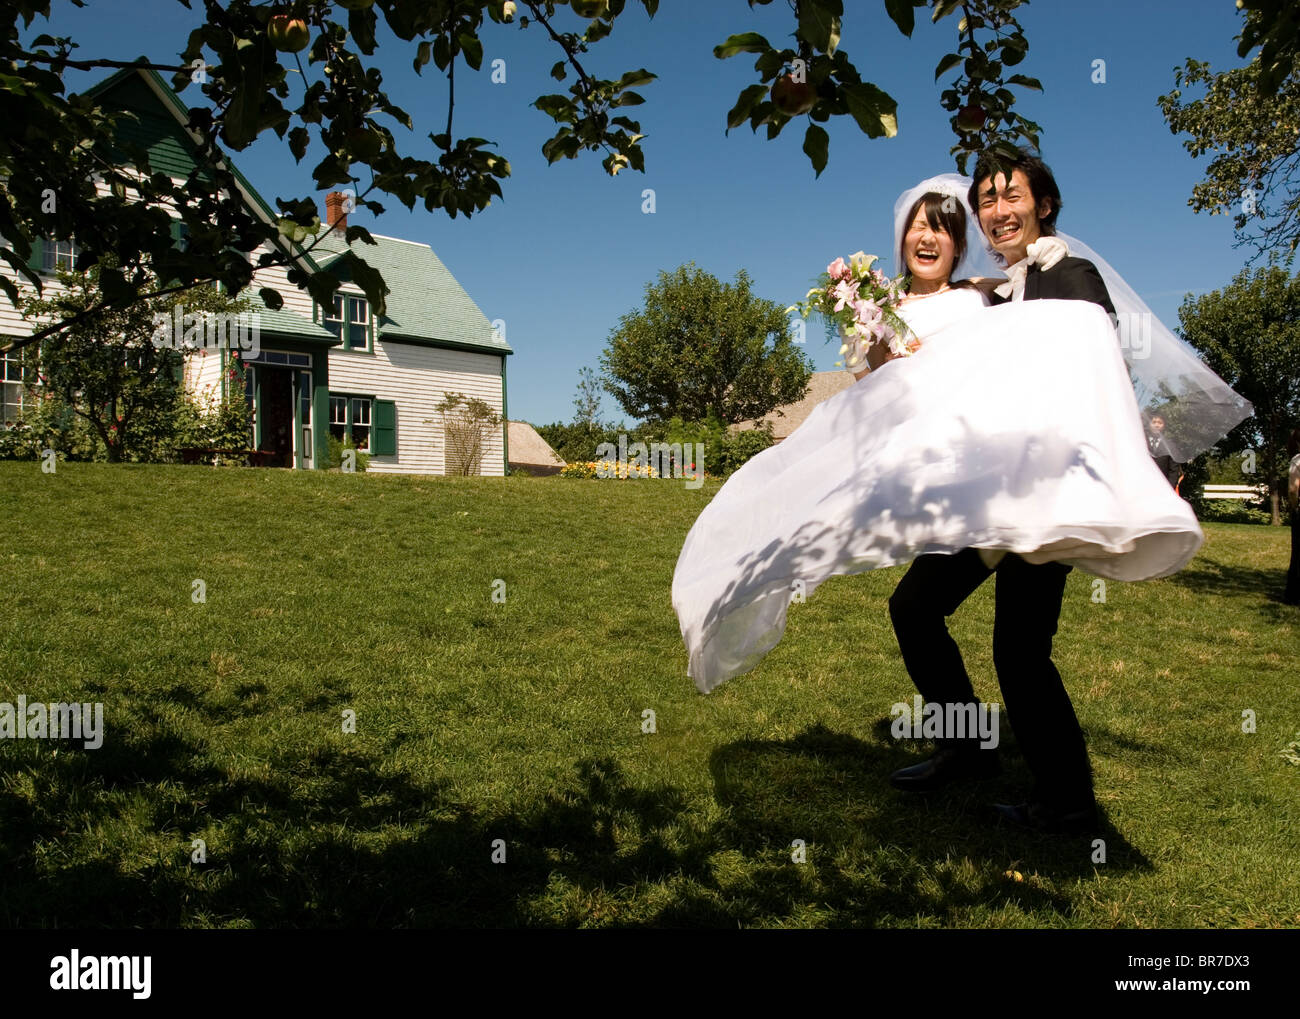 Green Gables Wedding Stock Photo